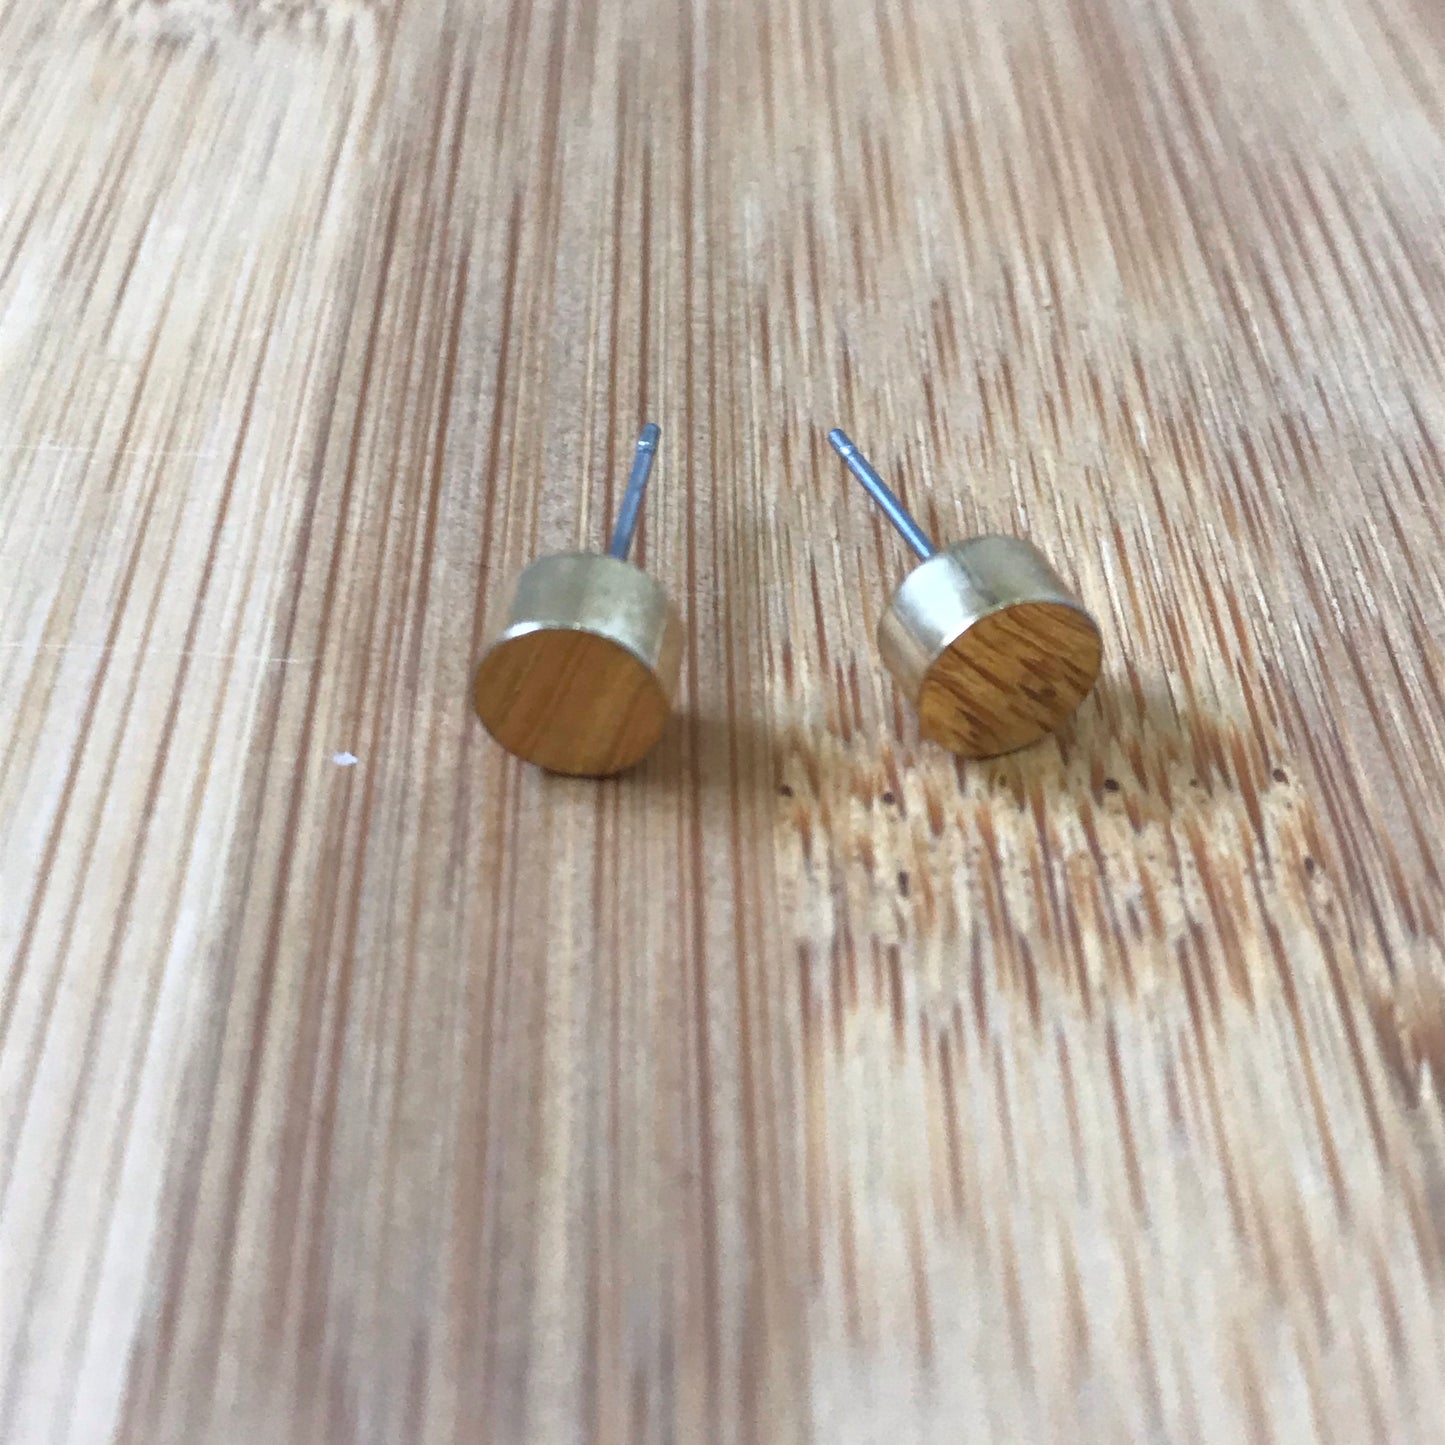 Small stud earrings